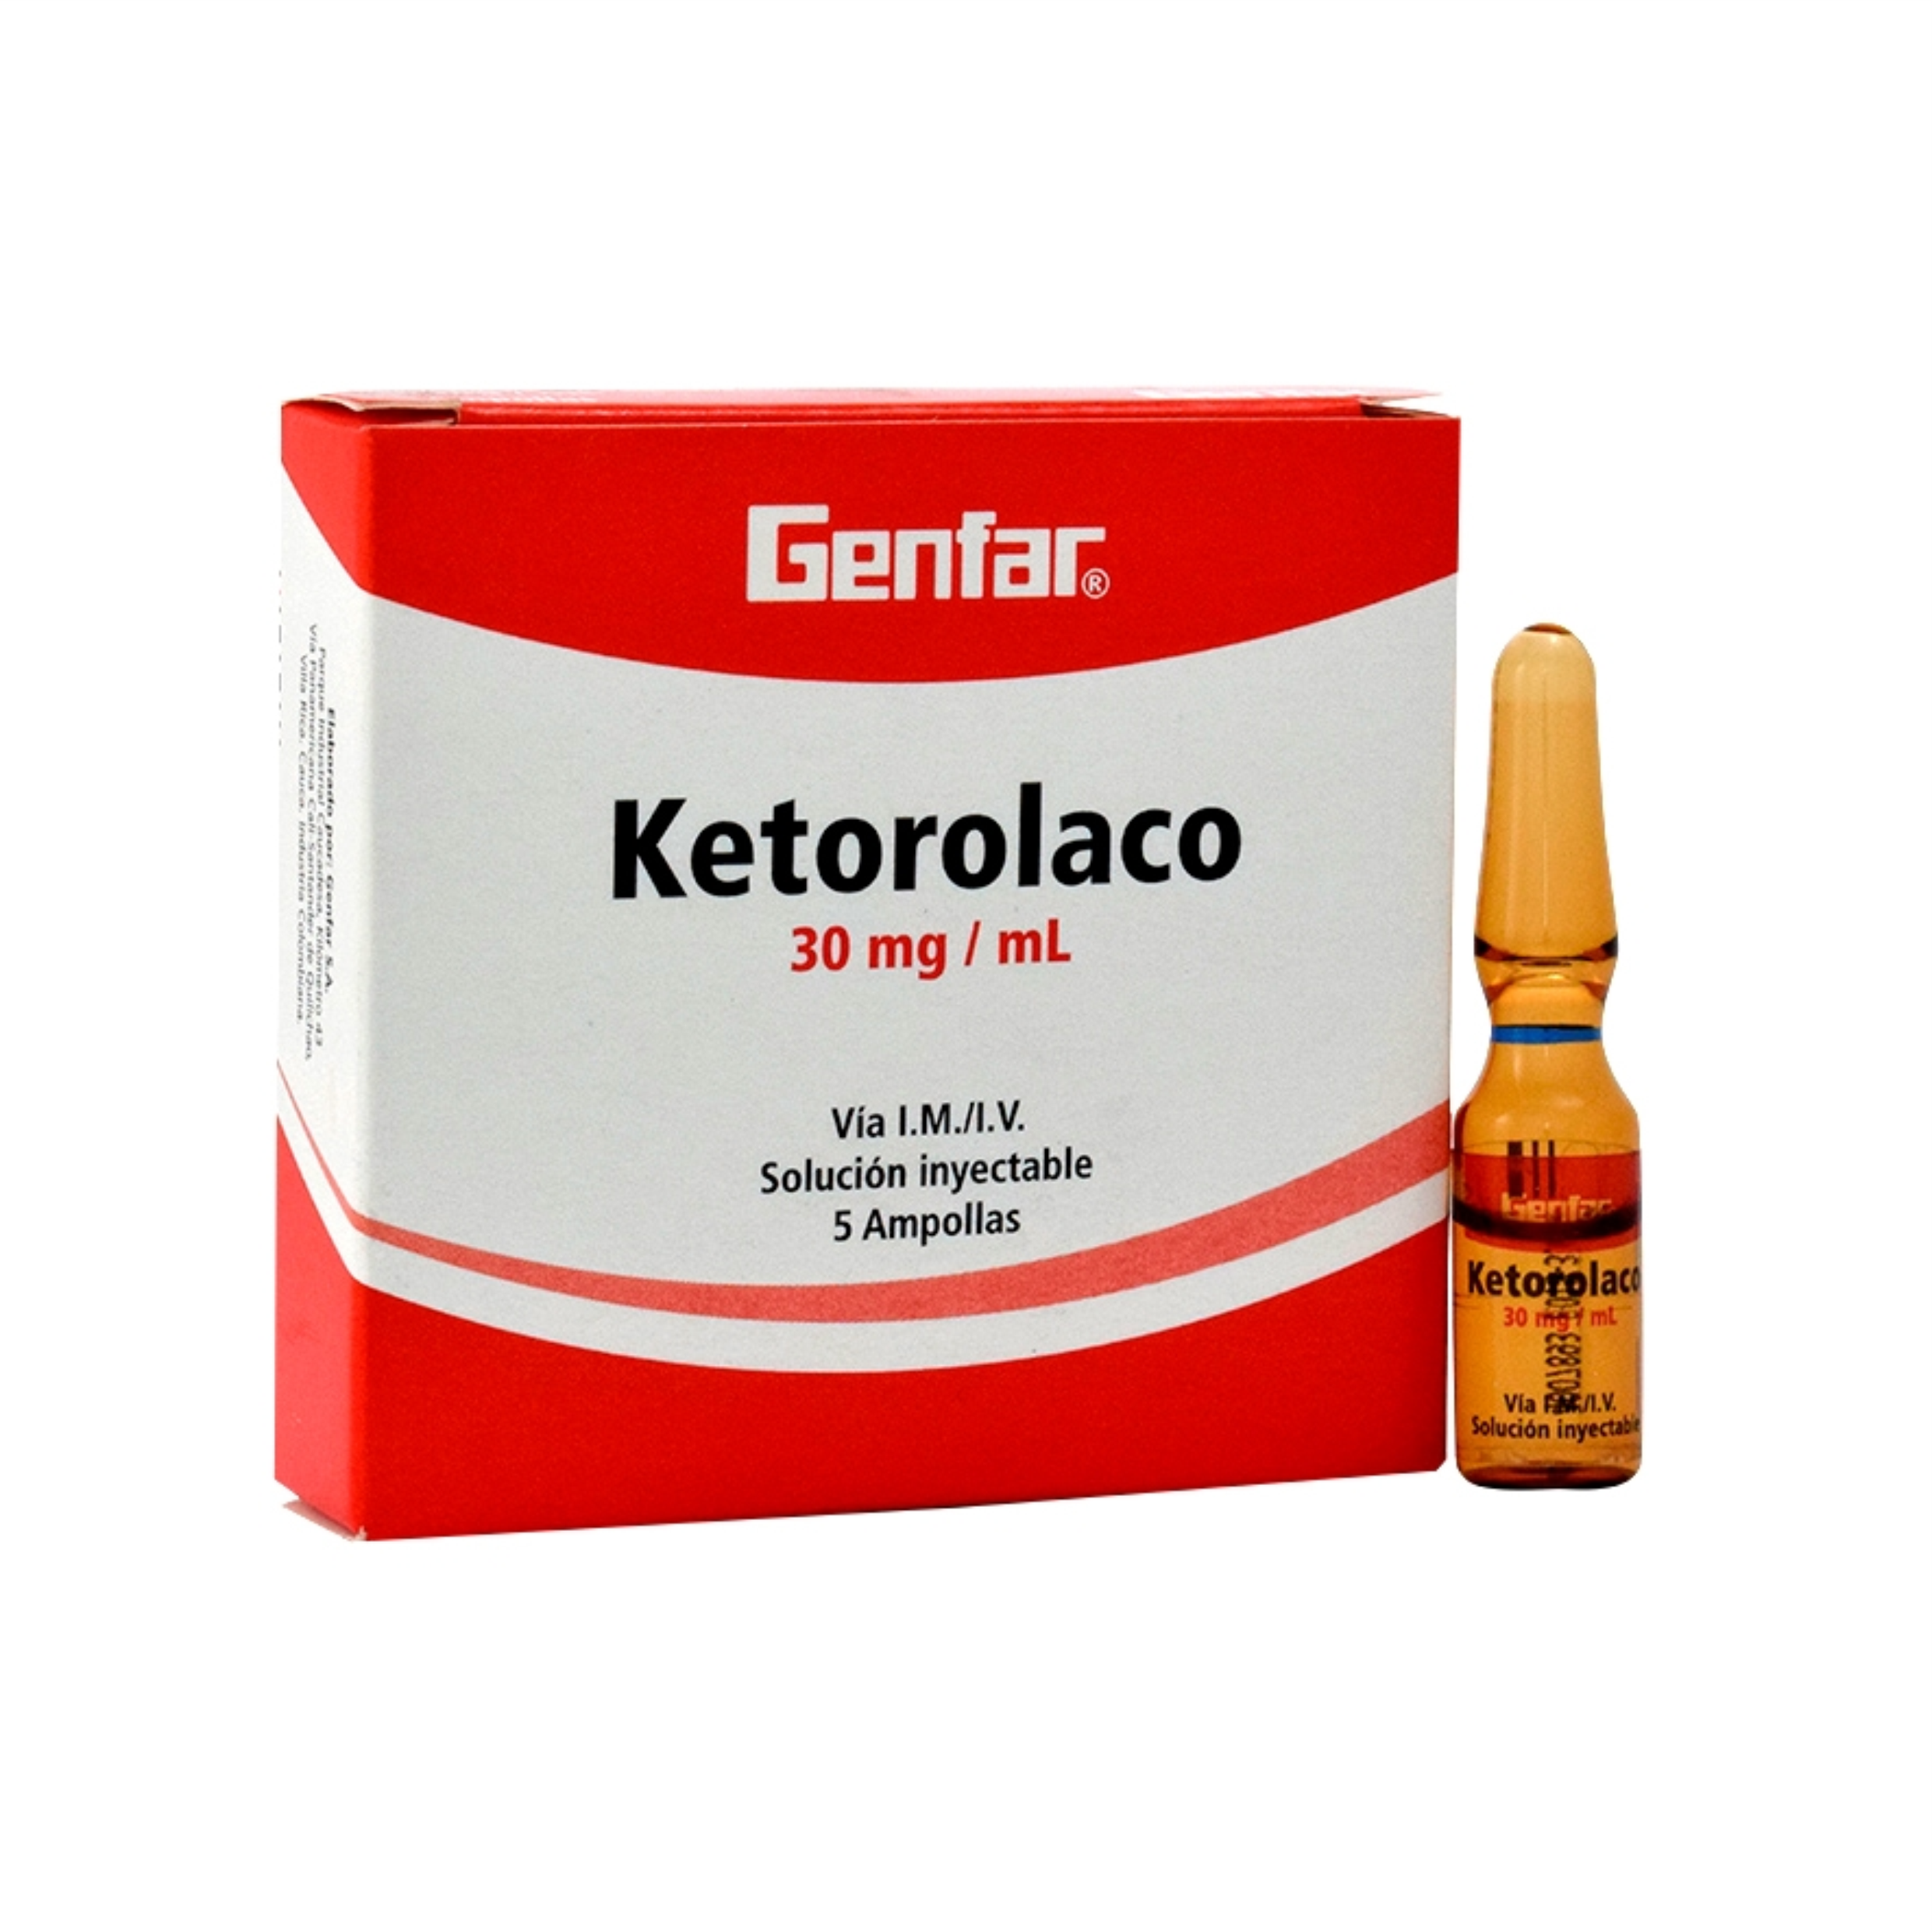 Ketorolaco 30 mg  Inyectable via I.M/I.V Caja x 5 Ampollas 1 mL